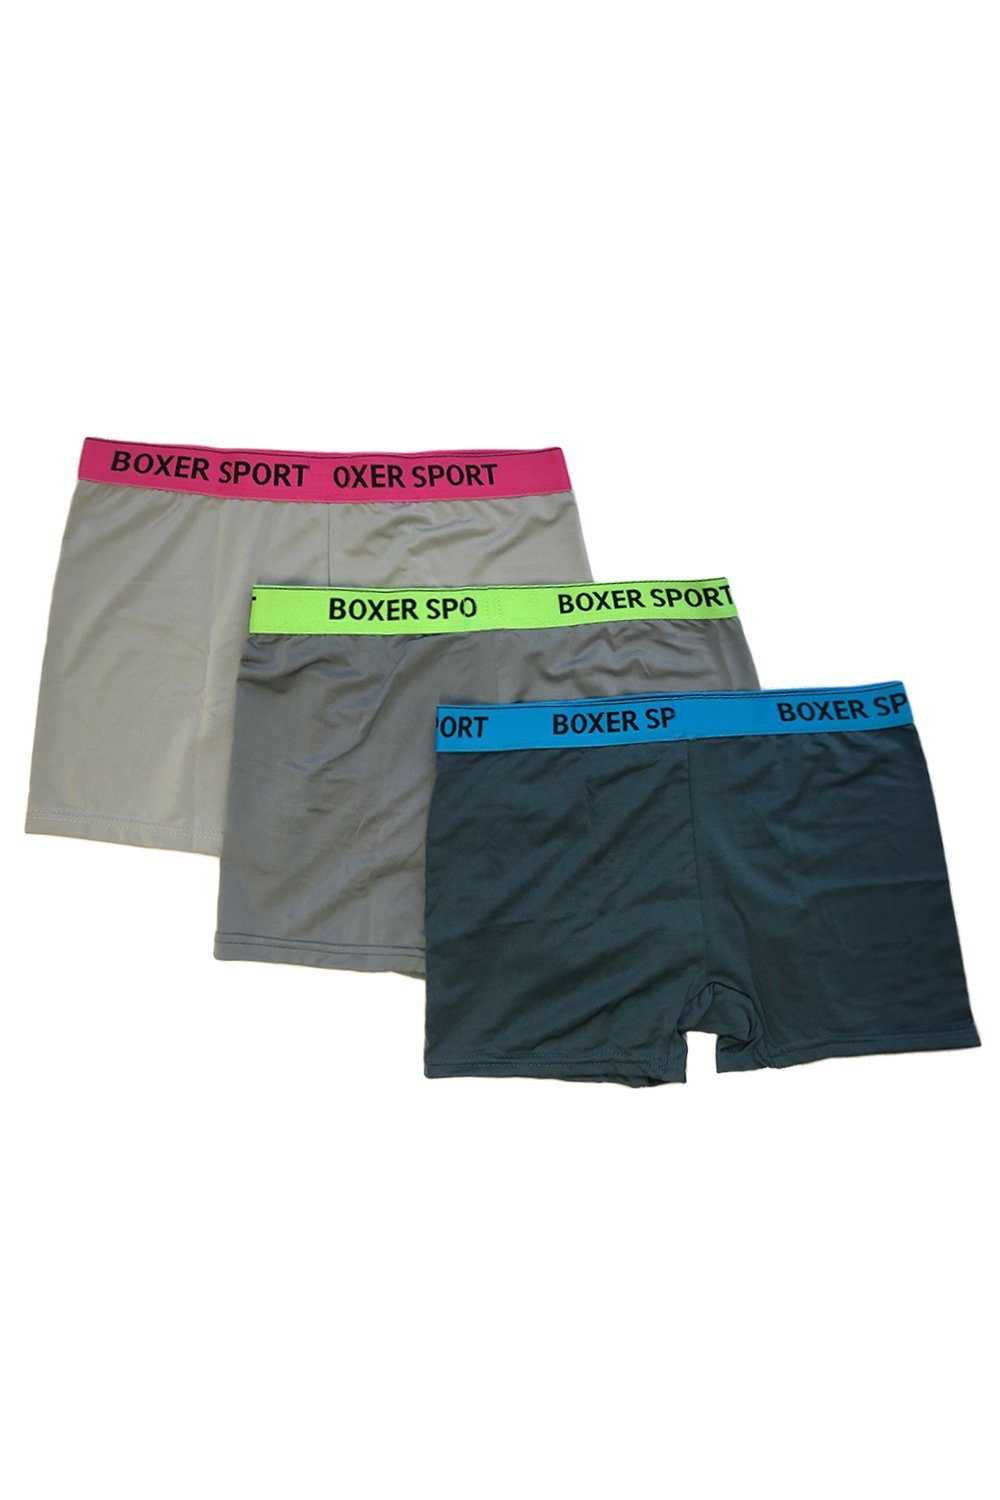 BSHETR Herren Boxershorts Unterwäsche Stilvolle weiche Mikrofaser Unterhosen 5er Pack